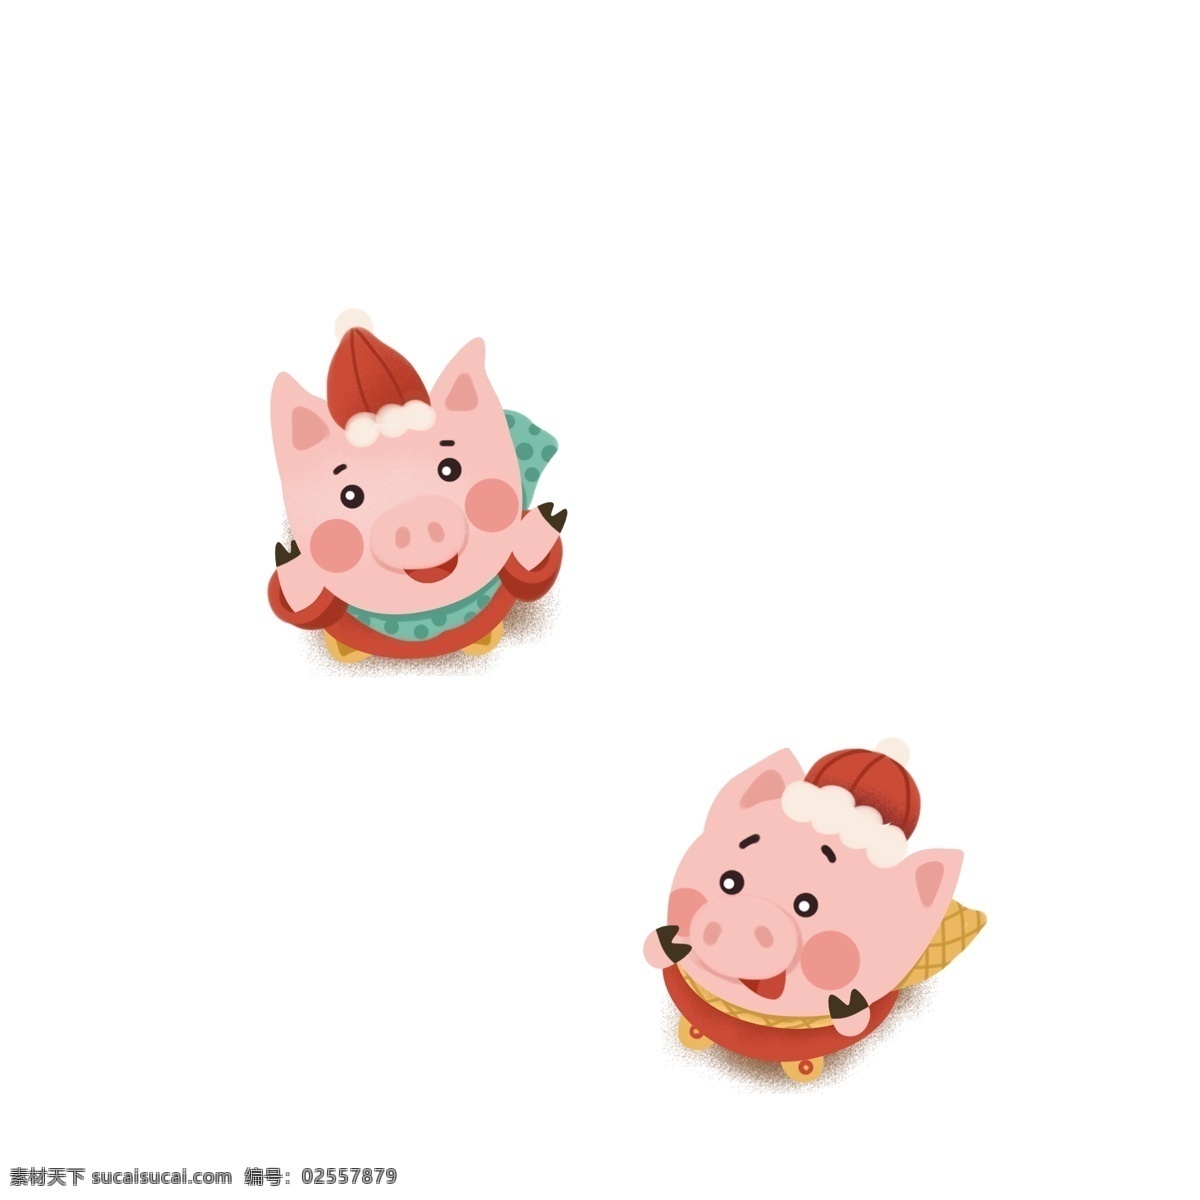 猪年 卡通 两个 小 猪 商用 元素 可爱 动物 小猪 插画